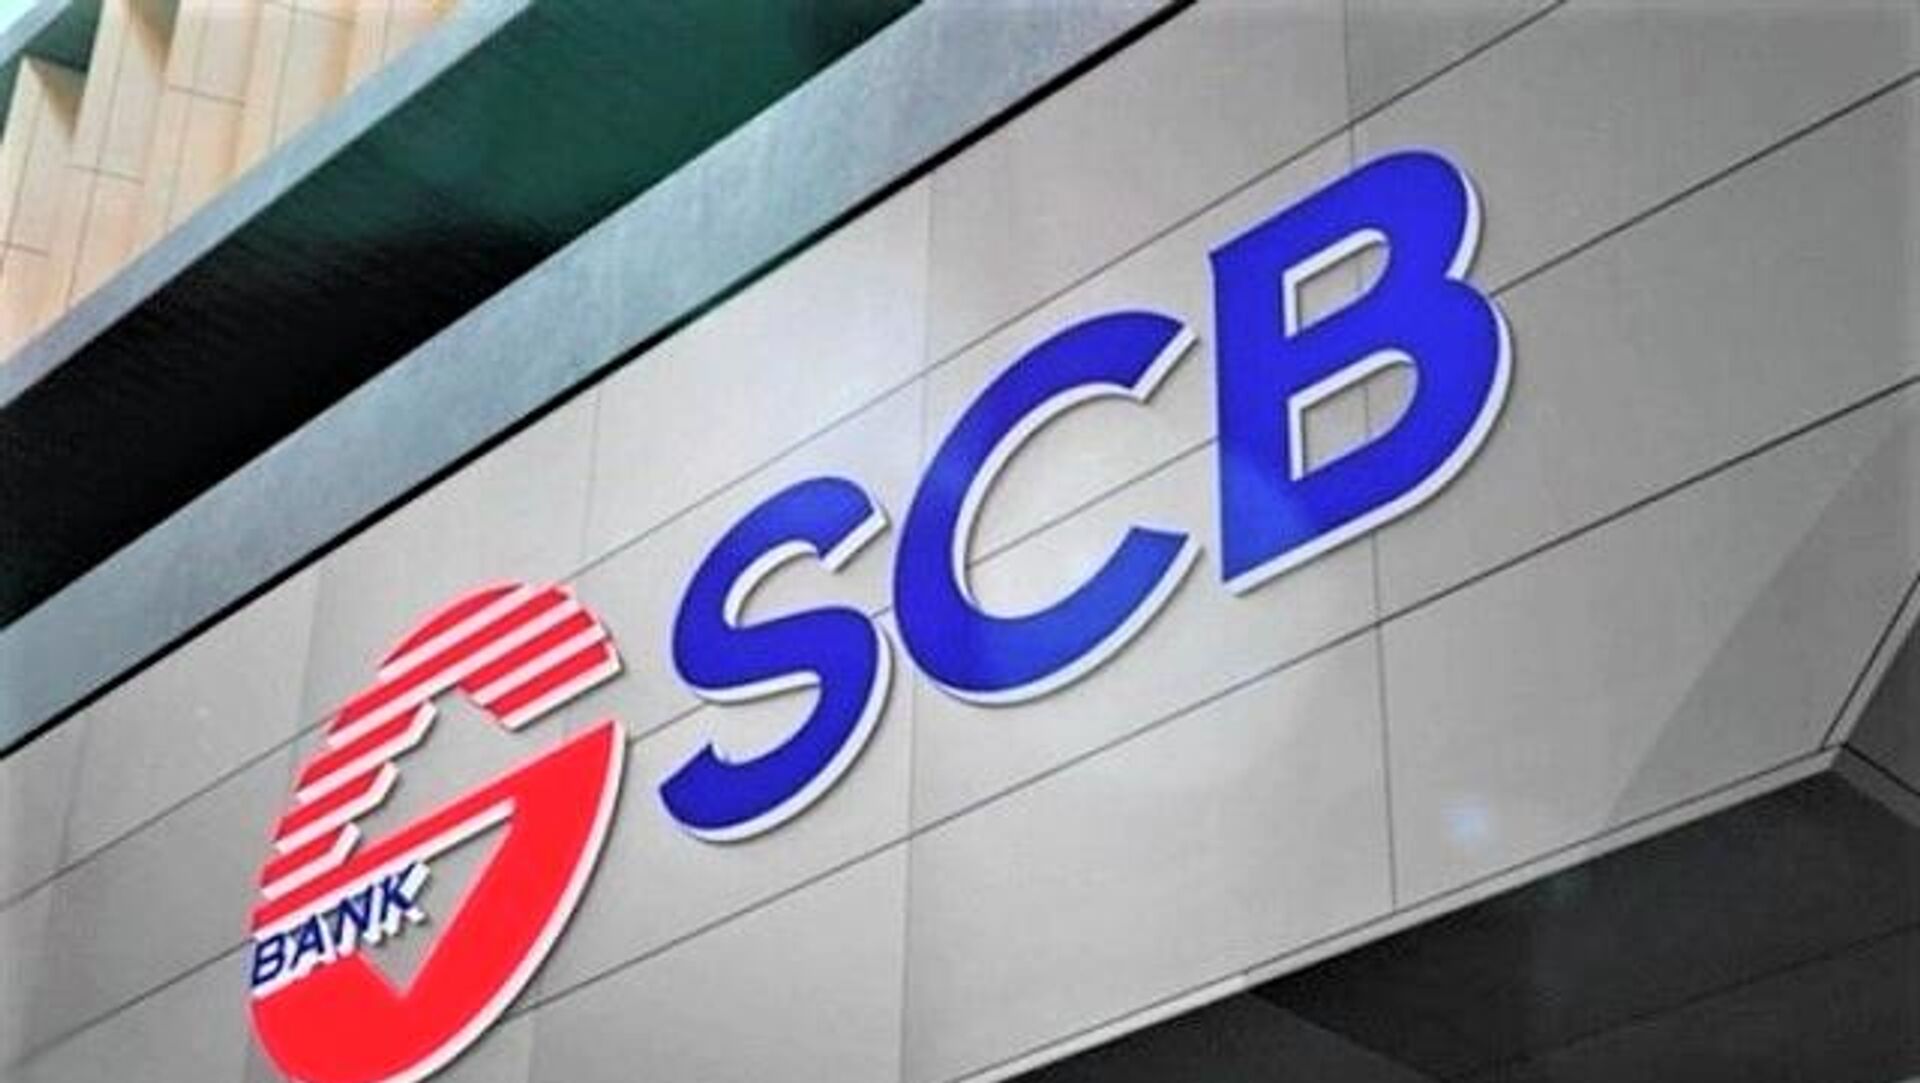 SCB đóng cửa thêm 5 phòng giao dịch tại TP HCM và Đà Nẵng từ đầu tháng 1, đã chấm dứt hoạt động hơn 1/4 sổ điểm giao dịch từ khi bị kiểm soát đặc biệt  - Ảnh 1.